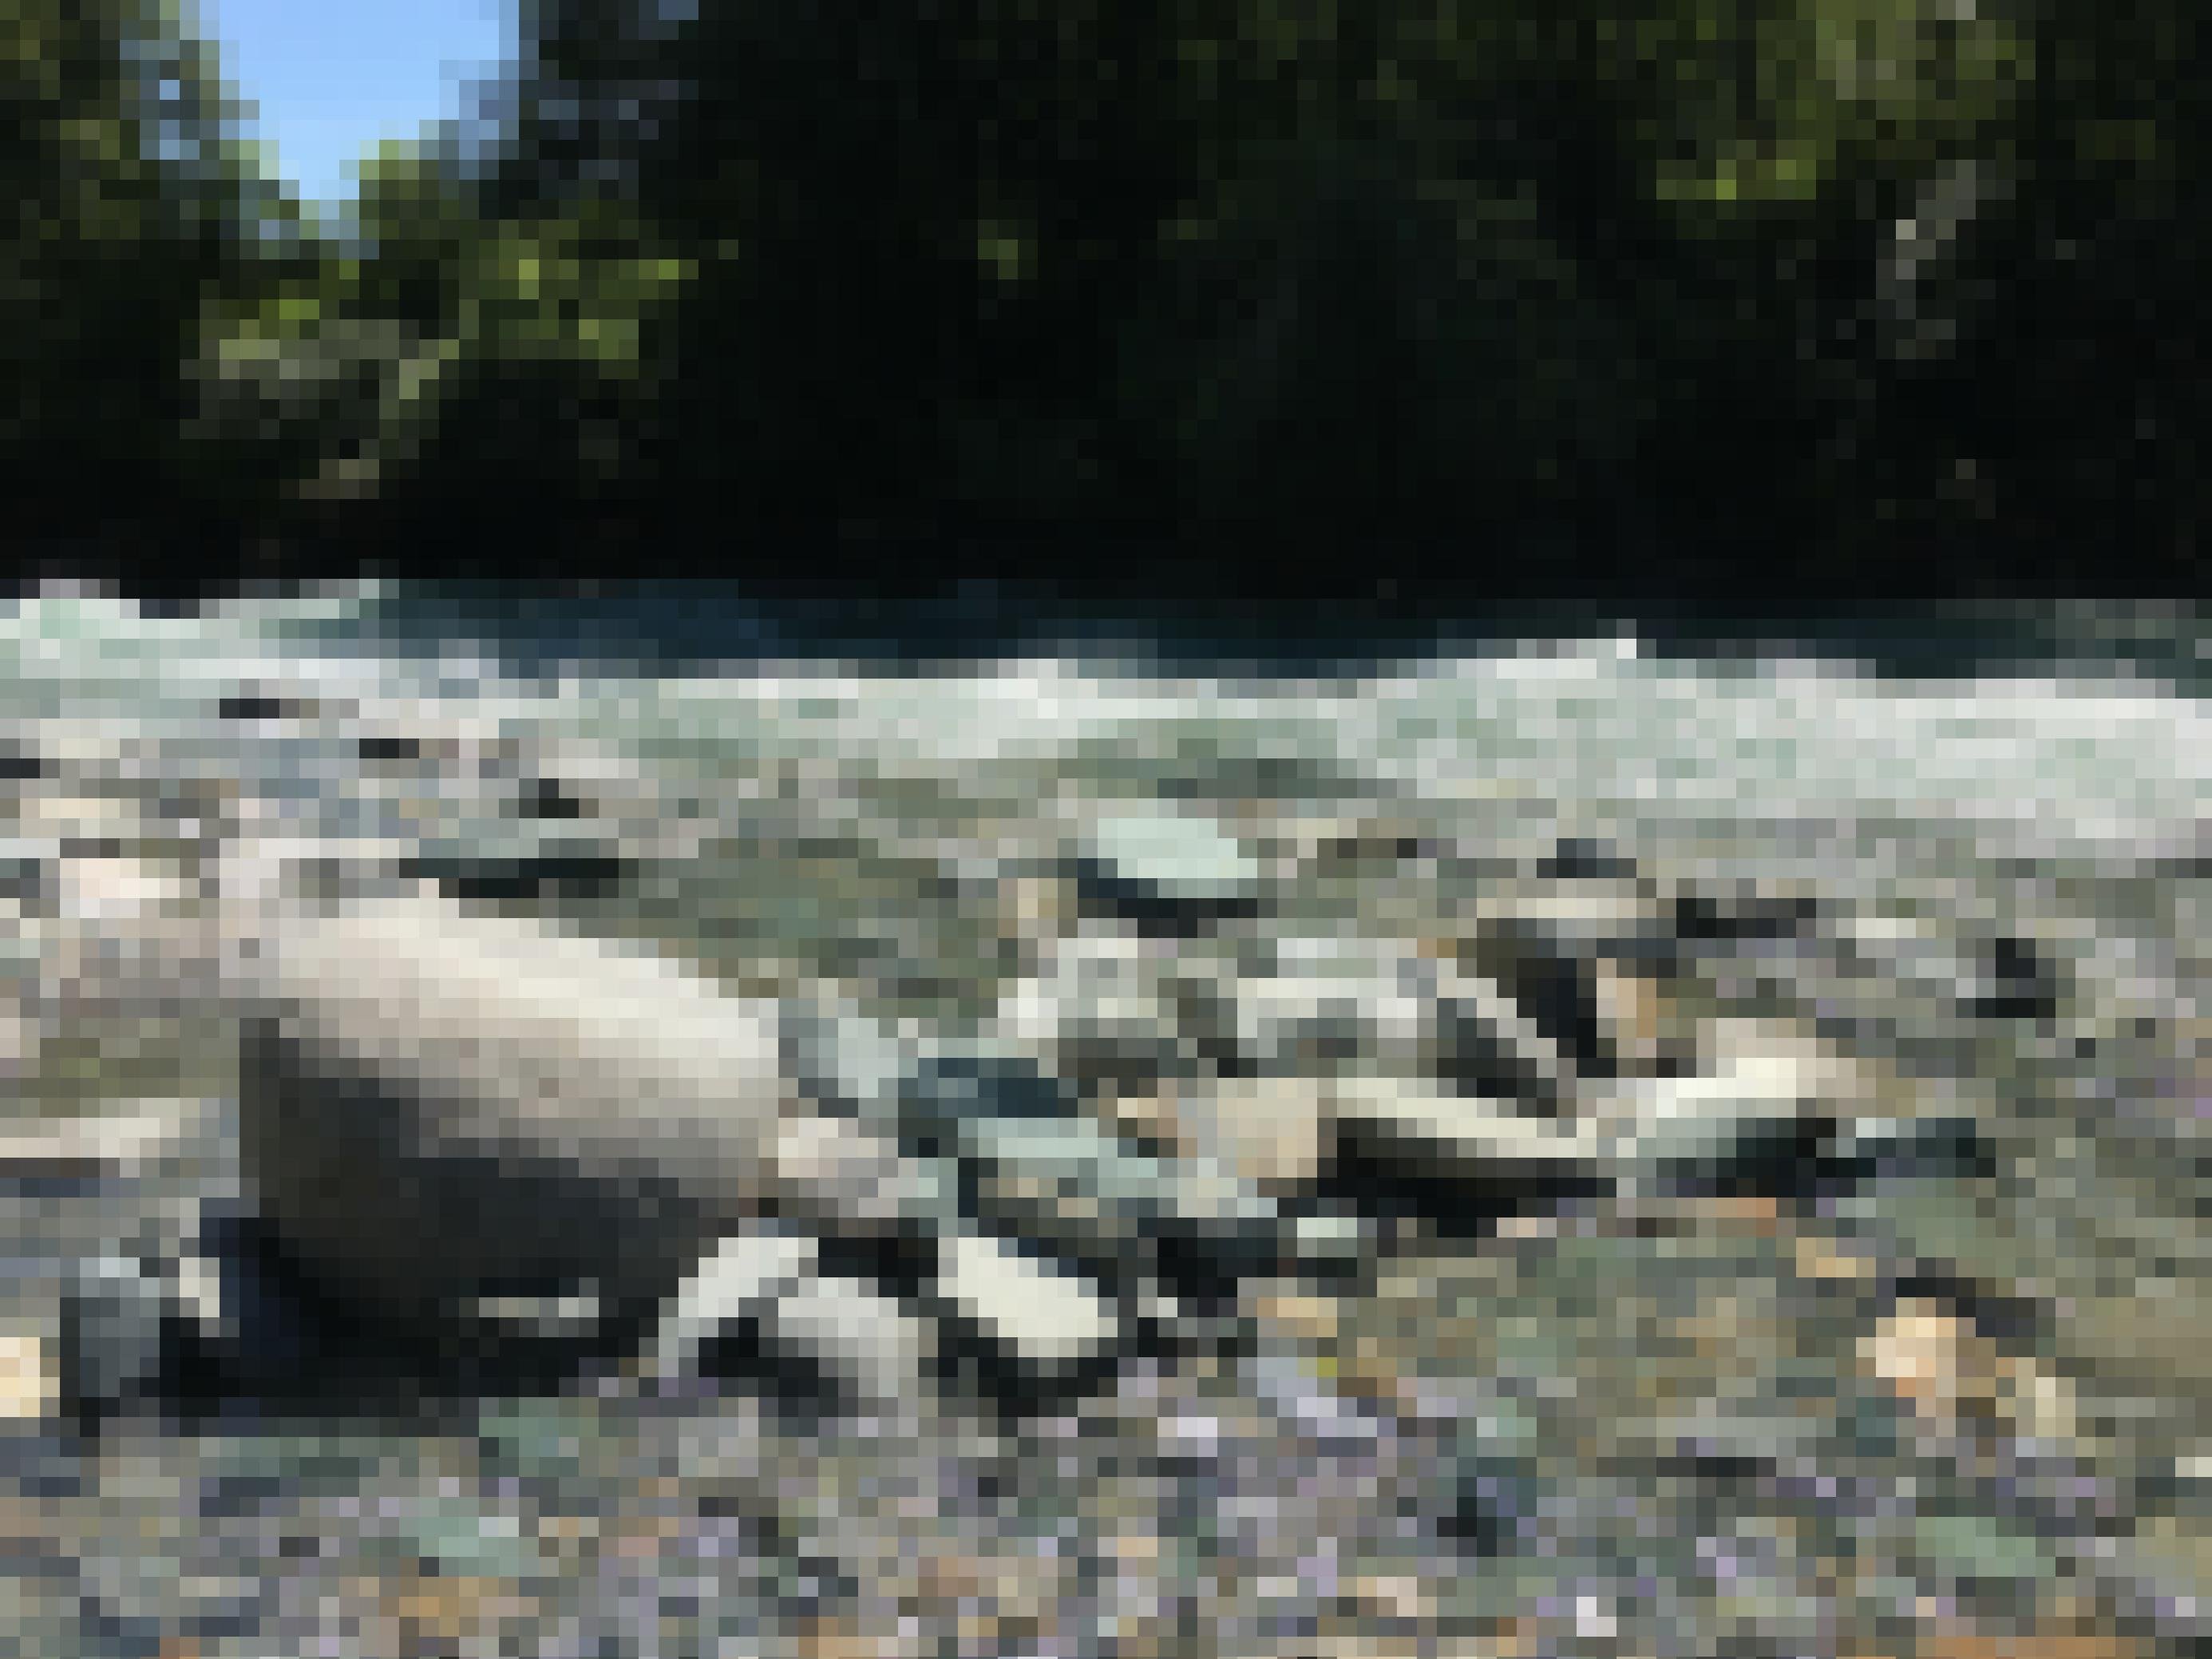 Fluss mit großen Steinen am Rand